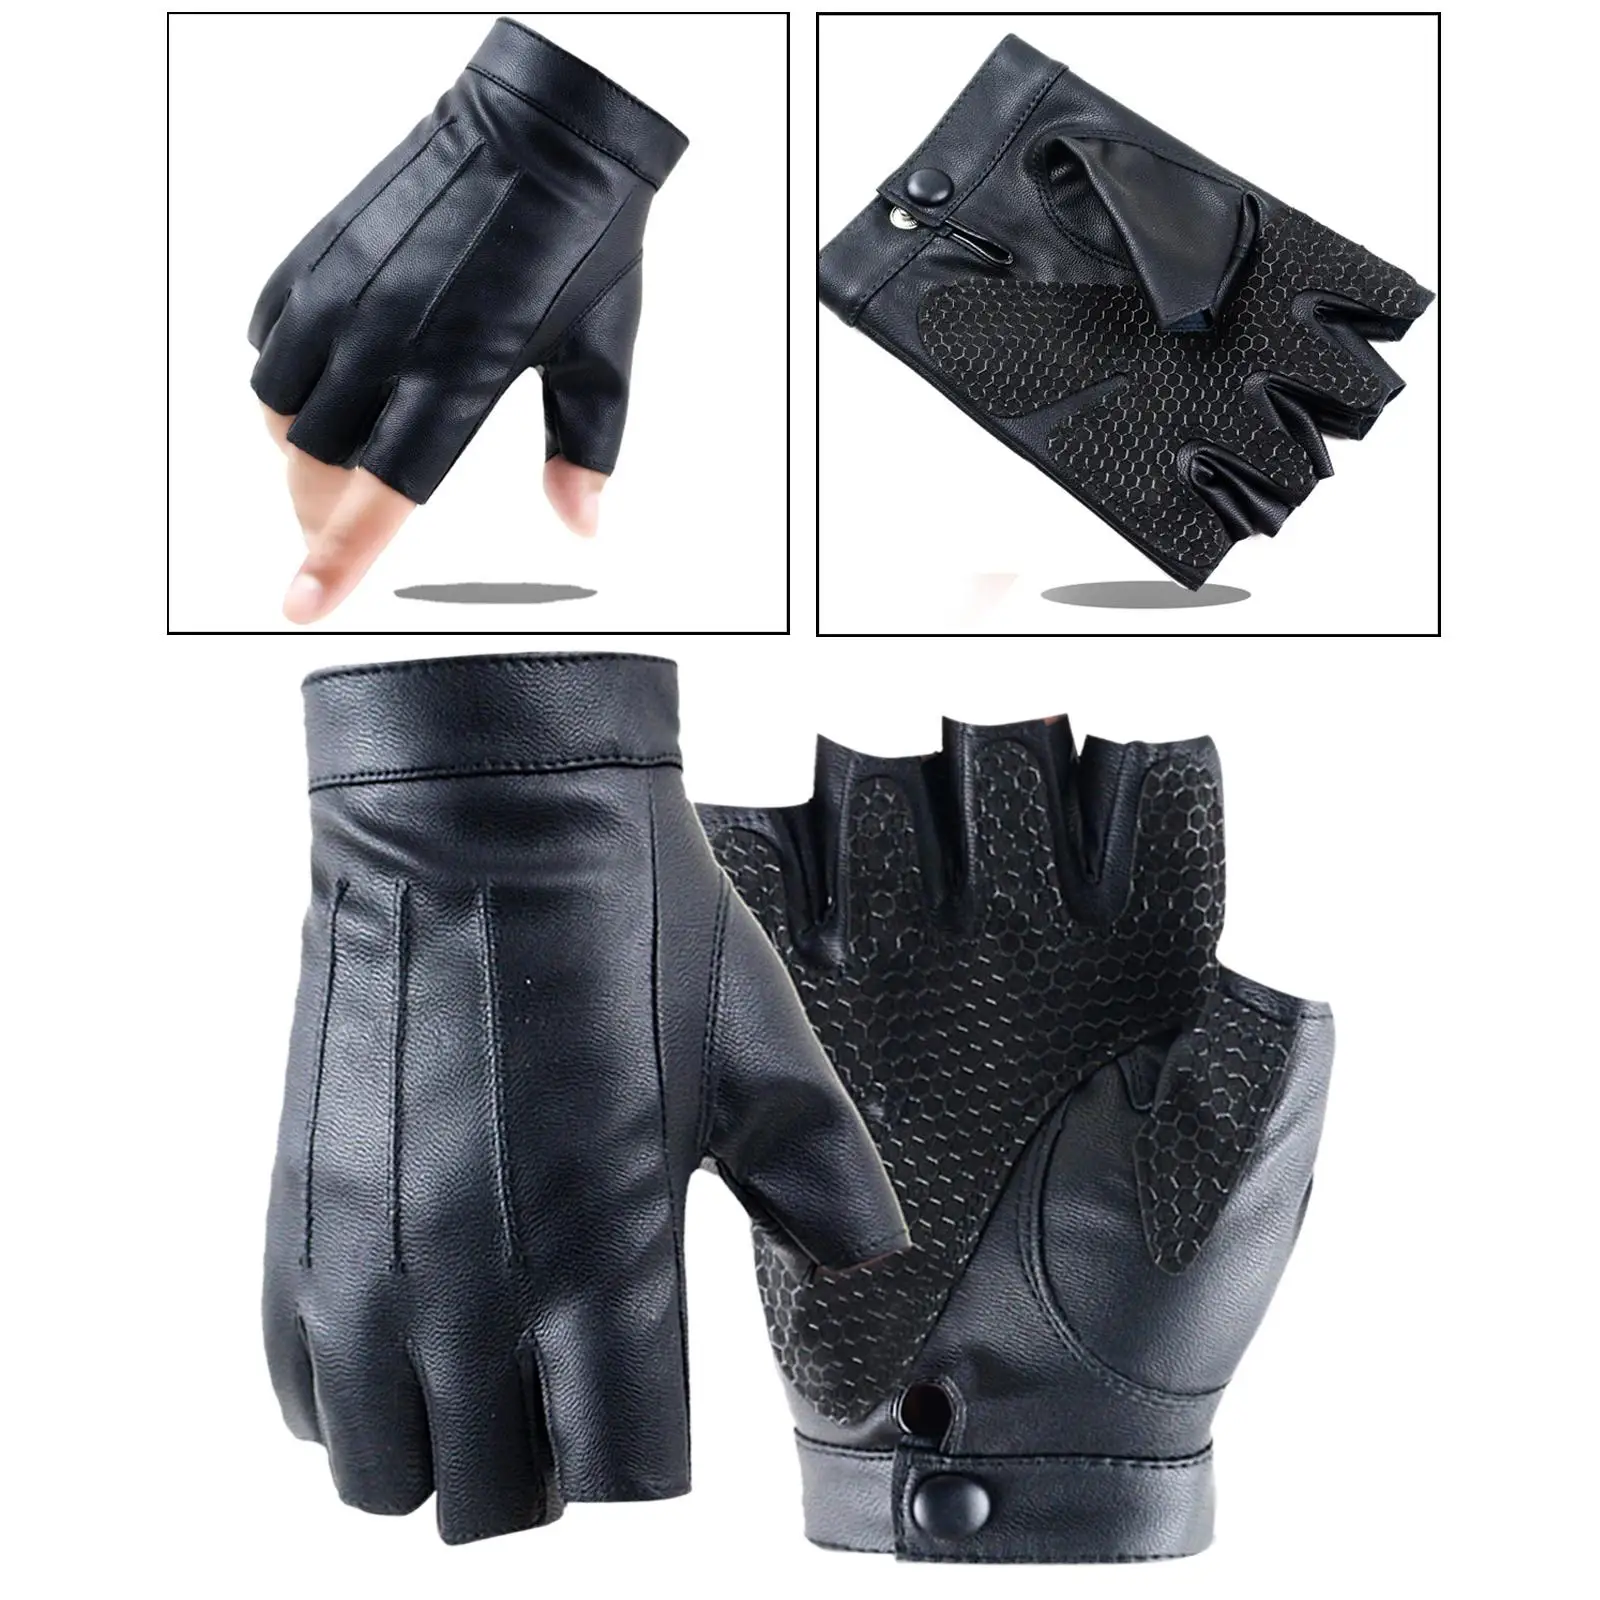 PU Leather Gloves Protection Non Slip Half Finger Gloves for Women Men